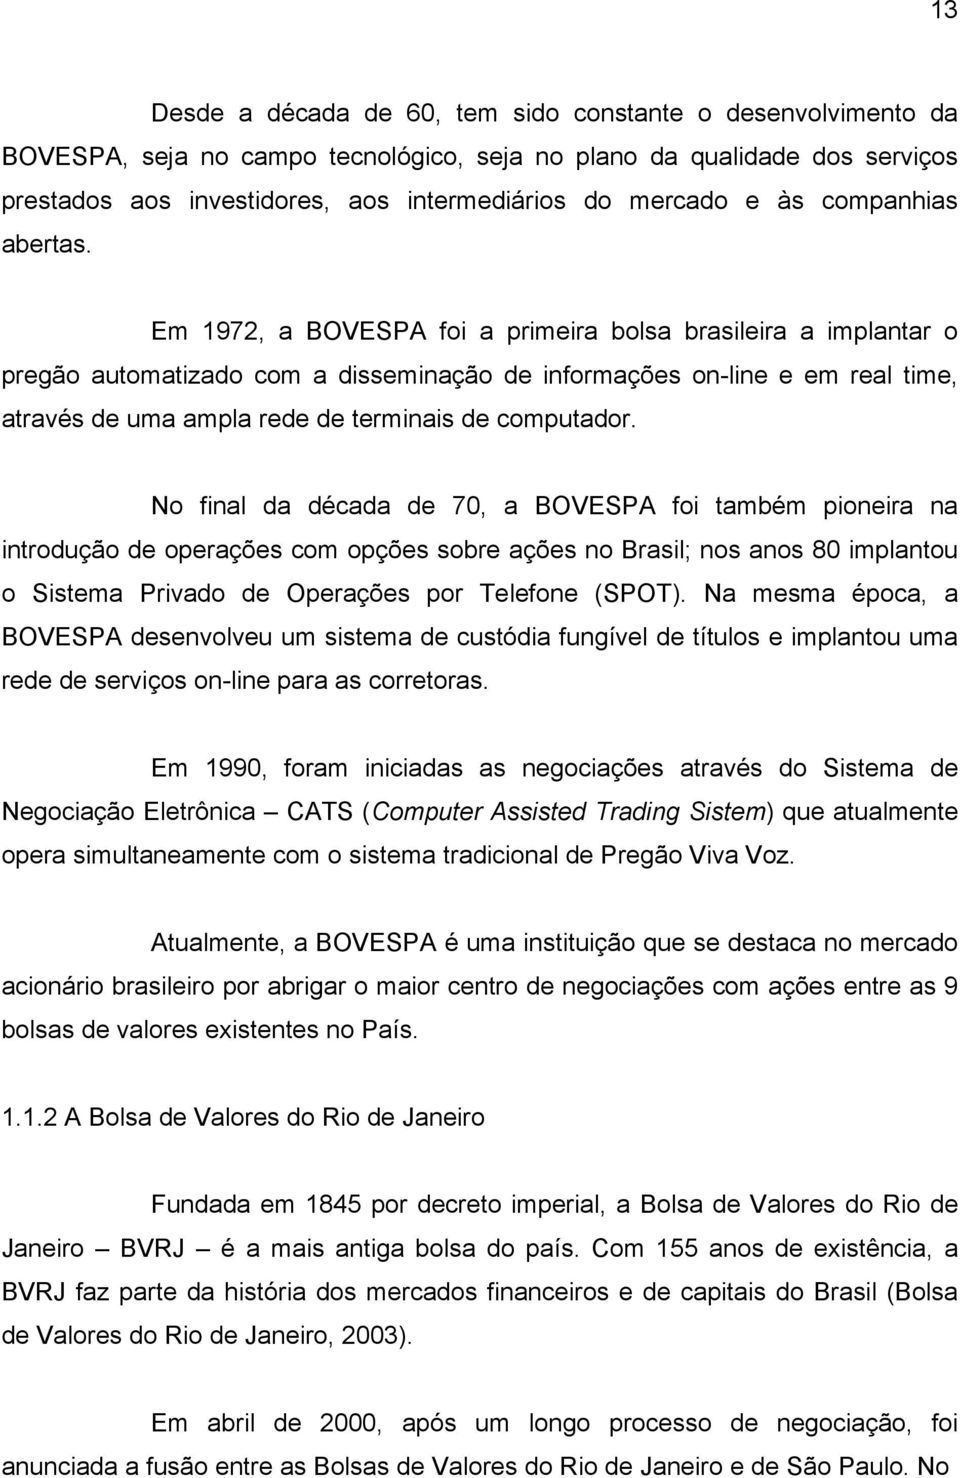 Em 1972, a BOVESPA foi a primeira bolsa brasileira a implantar o pregão automatizado com a disseminação de informações on-line e em real time, através de uma ampla rede de terminais de computador.